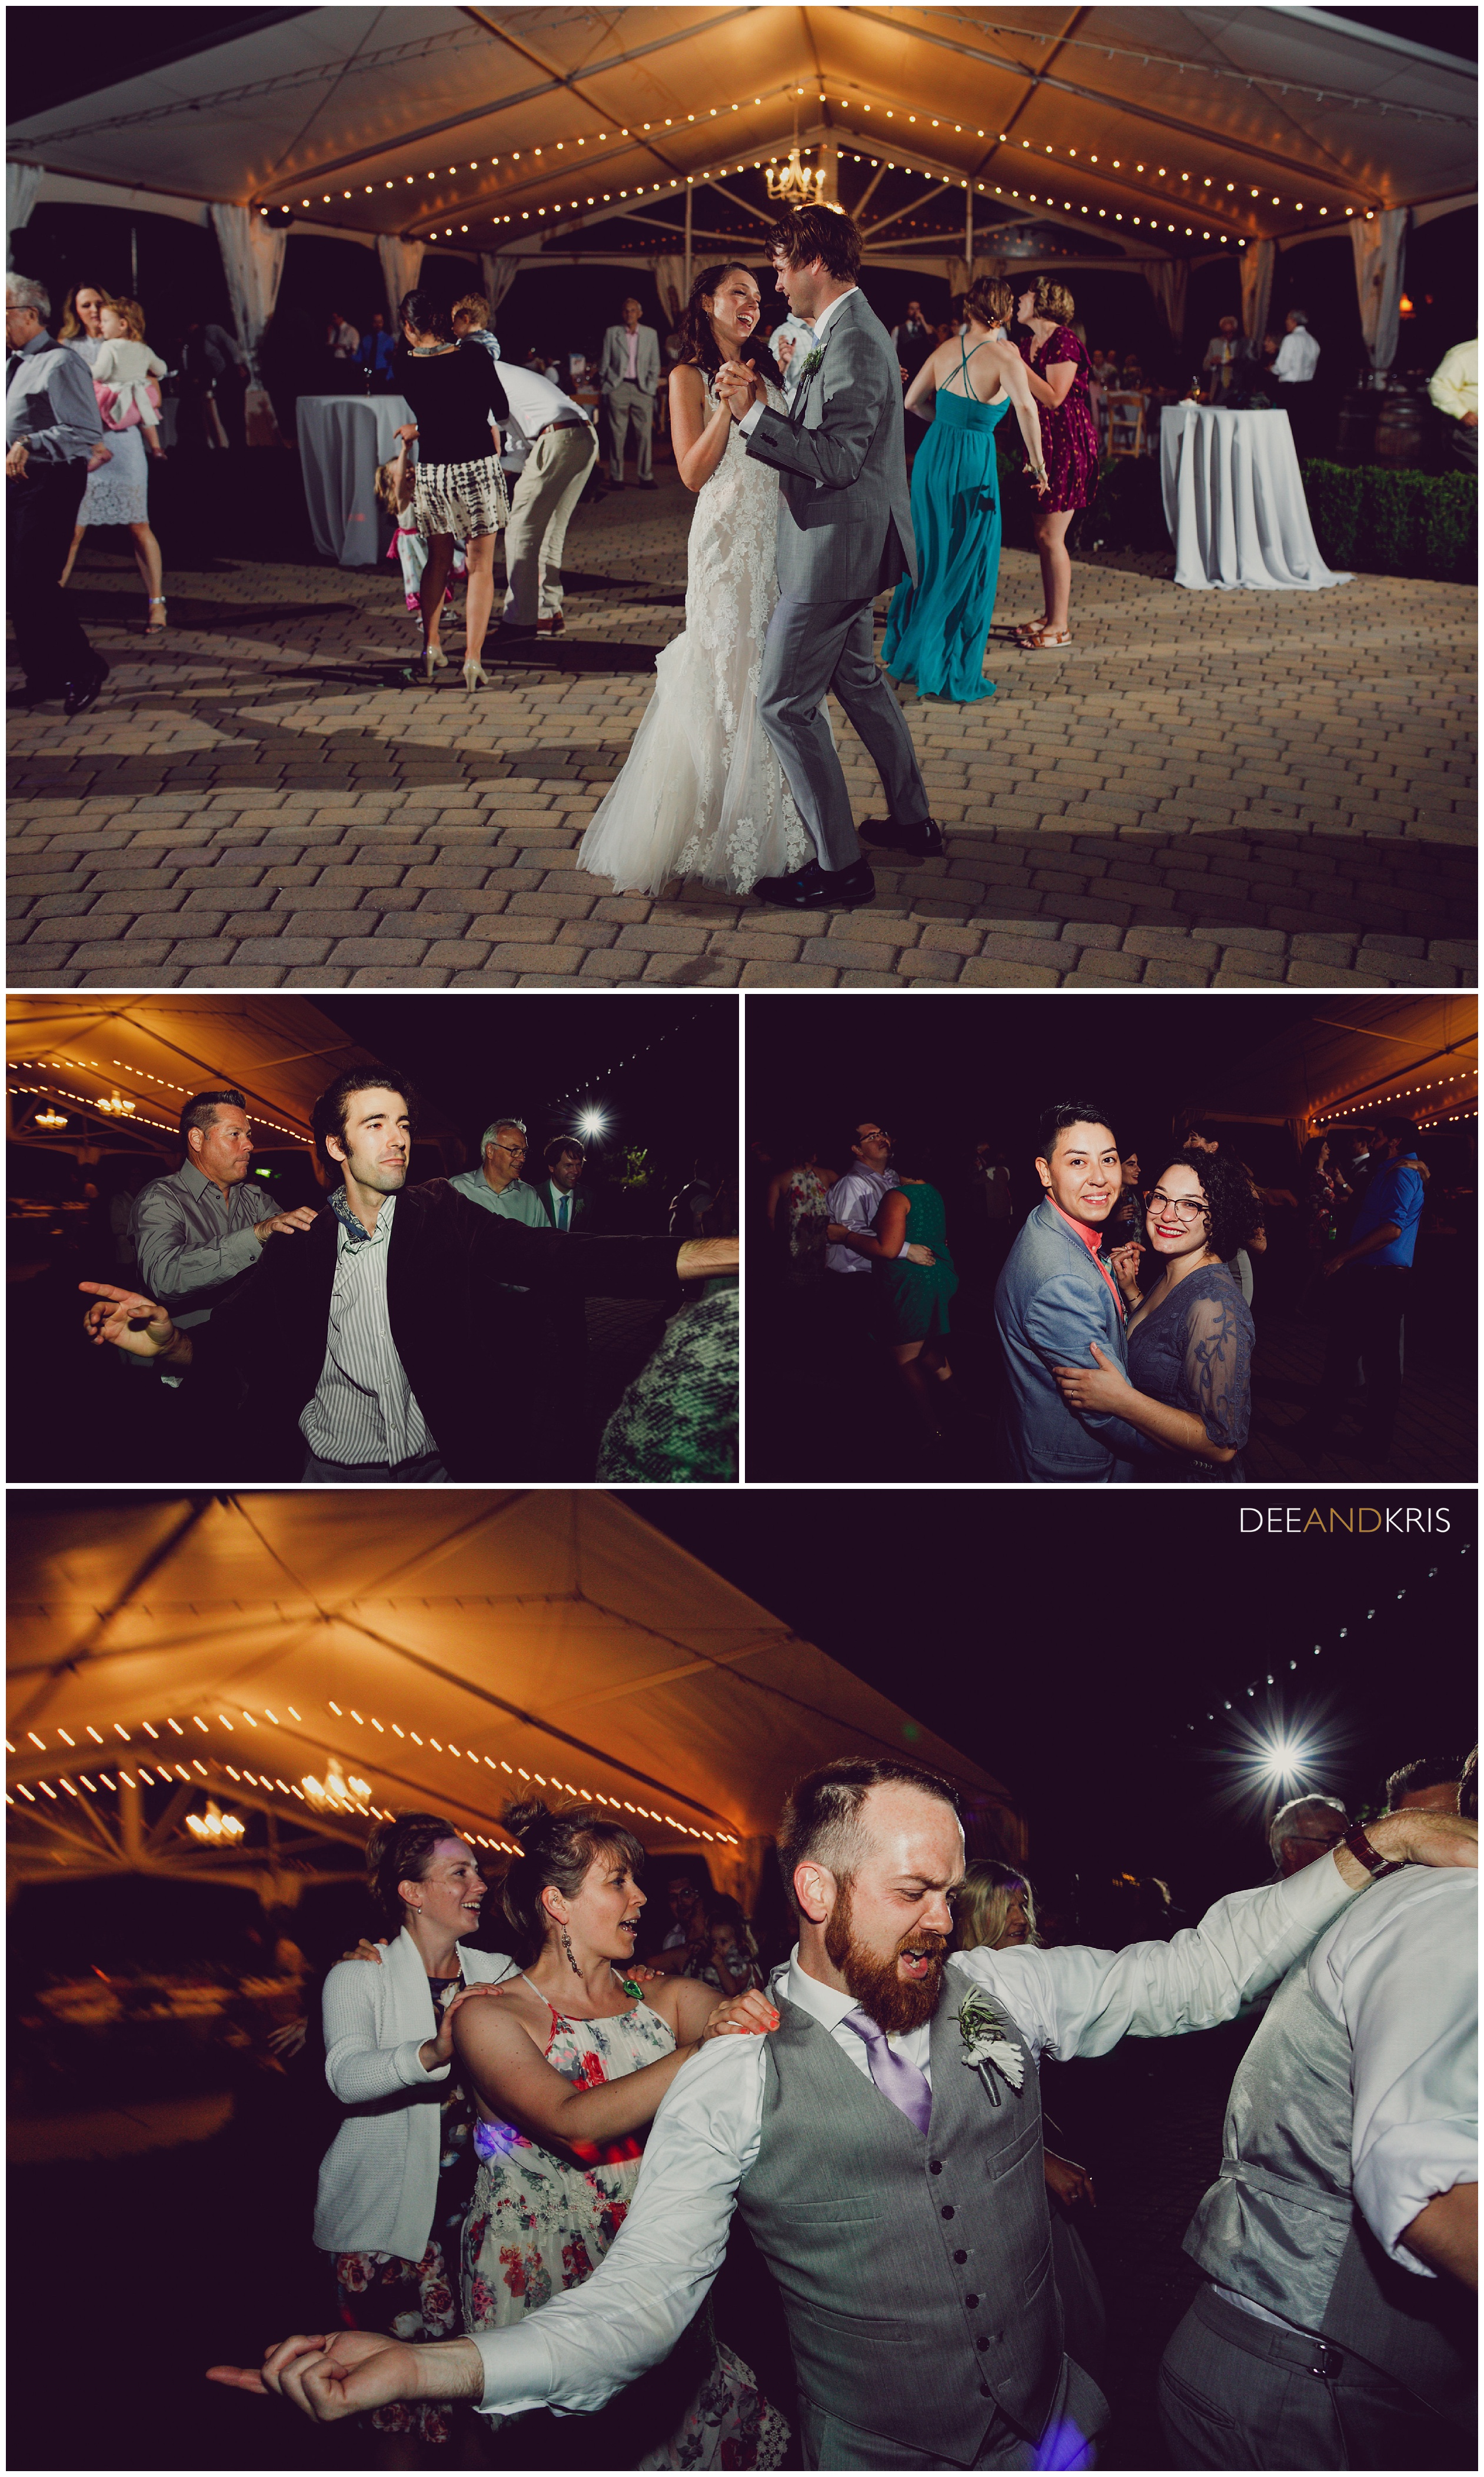 Scribner Bend Vineyard weddings, Dee and Kris Photography, Scribner Bend Wedding, Vineyard Wedding, Scribner Bend Sunset